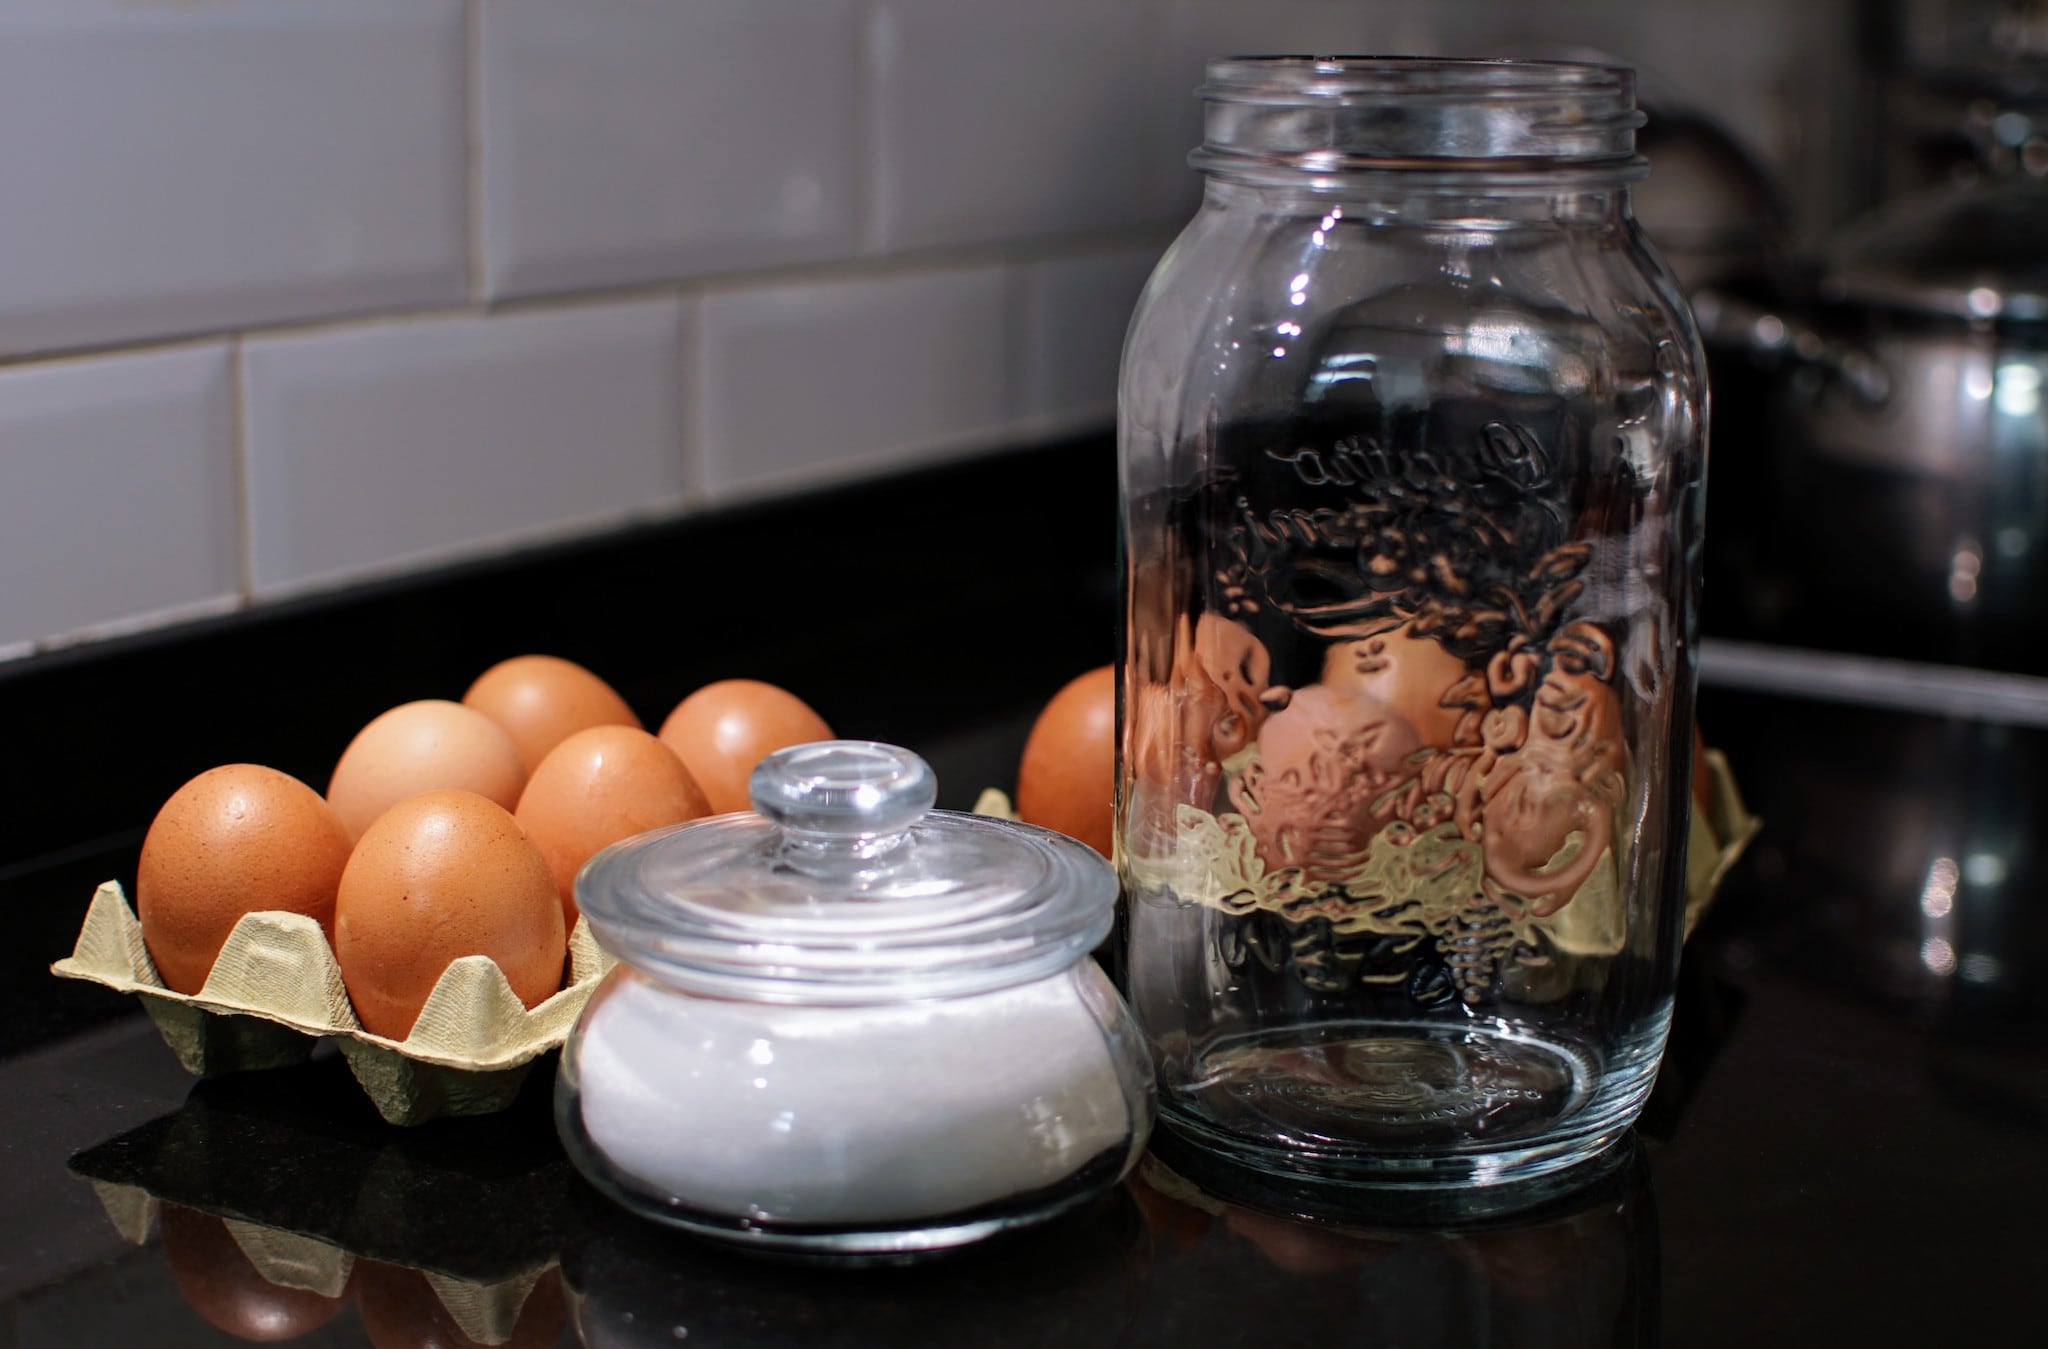 Ingredients of making salted eggs